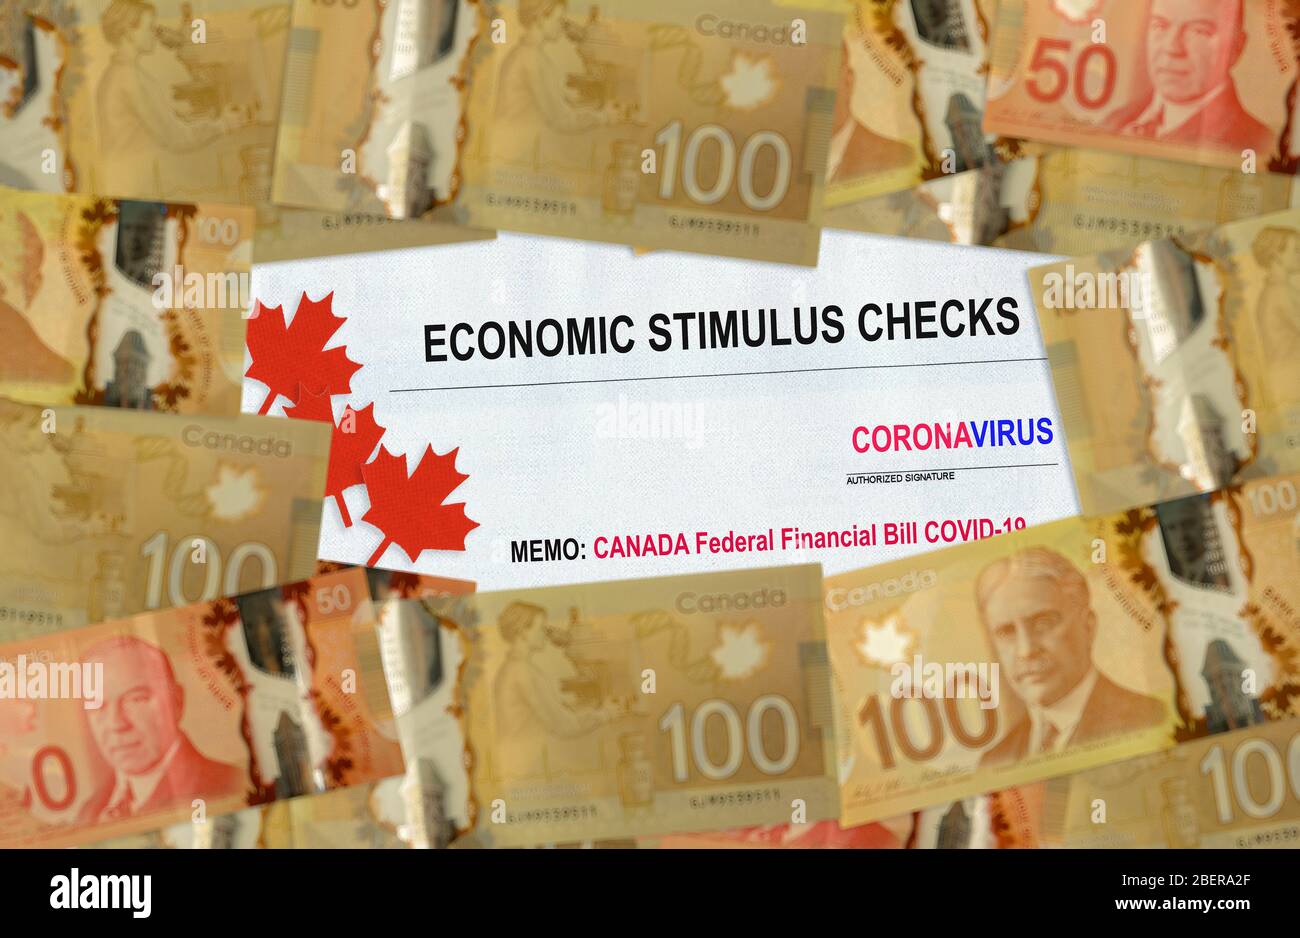 Kanada COVID-19 über globale Pandemie Lockdown Konjunkturpaket finanzielle Entlastung die kanadische Regierung Stimulus Coronavirus Entlastung Rechnung Kanada Dollar Soft fokus angekündigt Stockfoto